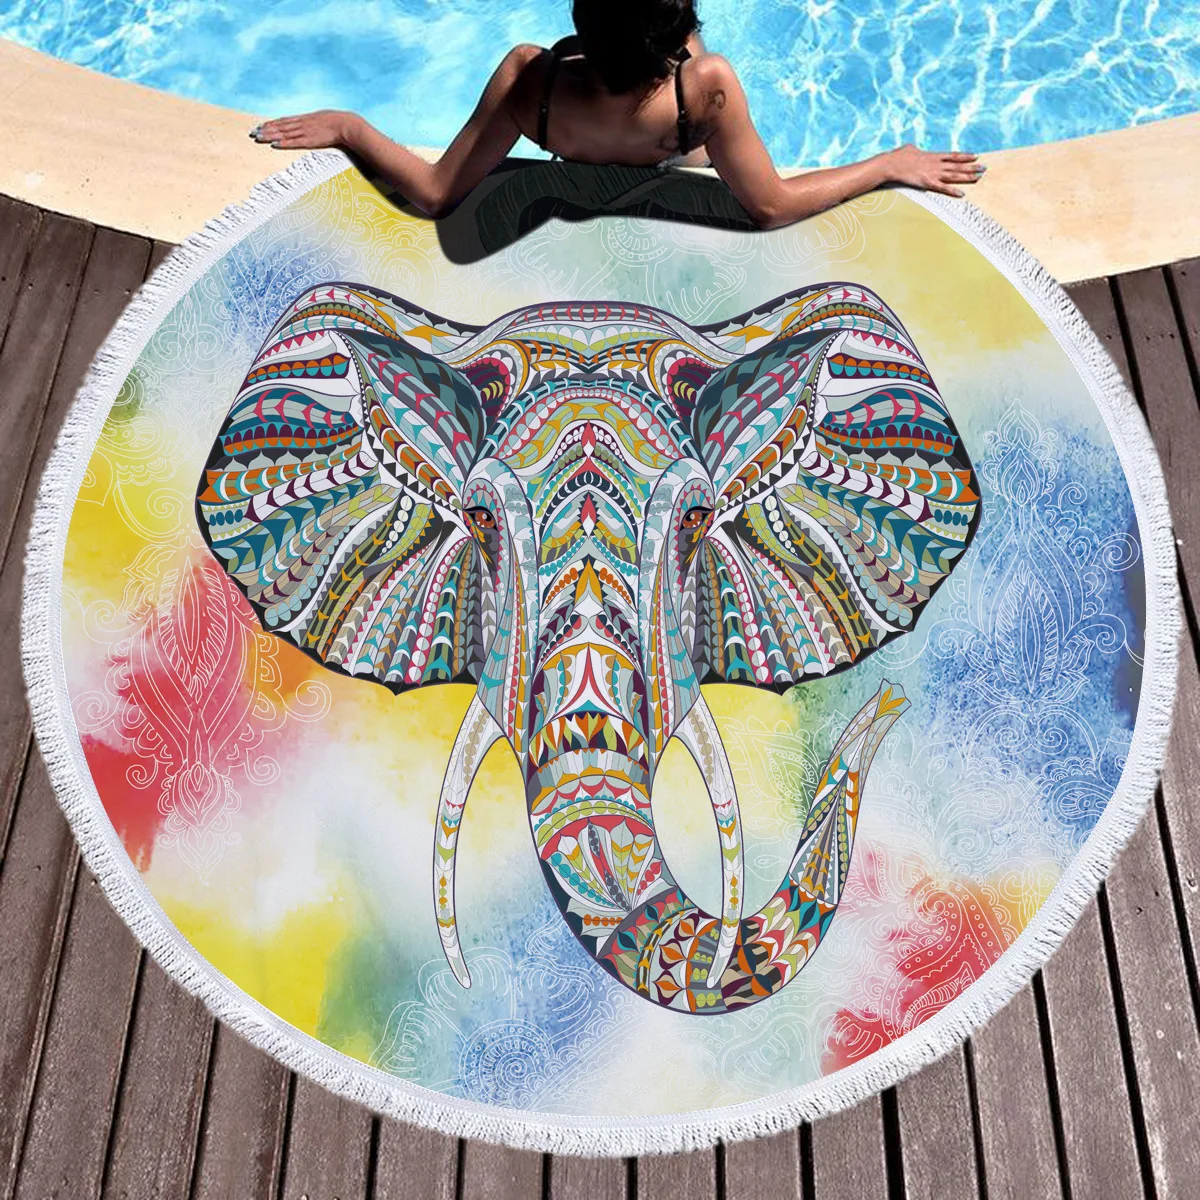 Домашний текстиль круглый пляжный коврик кисточкой Индии Слон Богемия Стиль Национальный стиль микрофибры может использоваться как Пикник pad